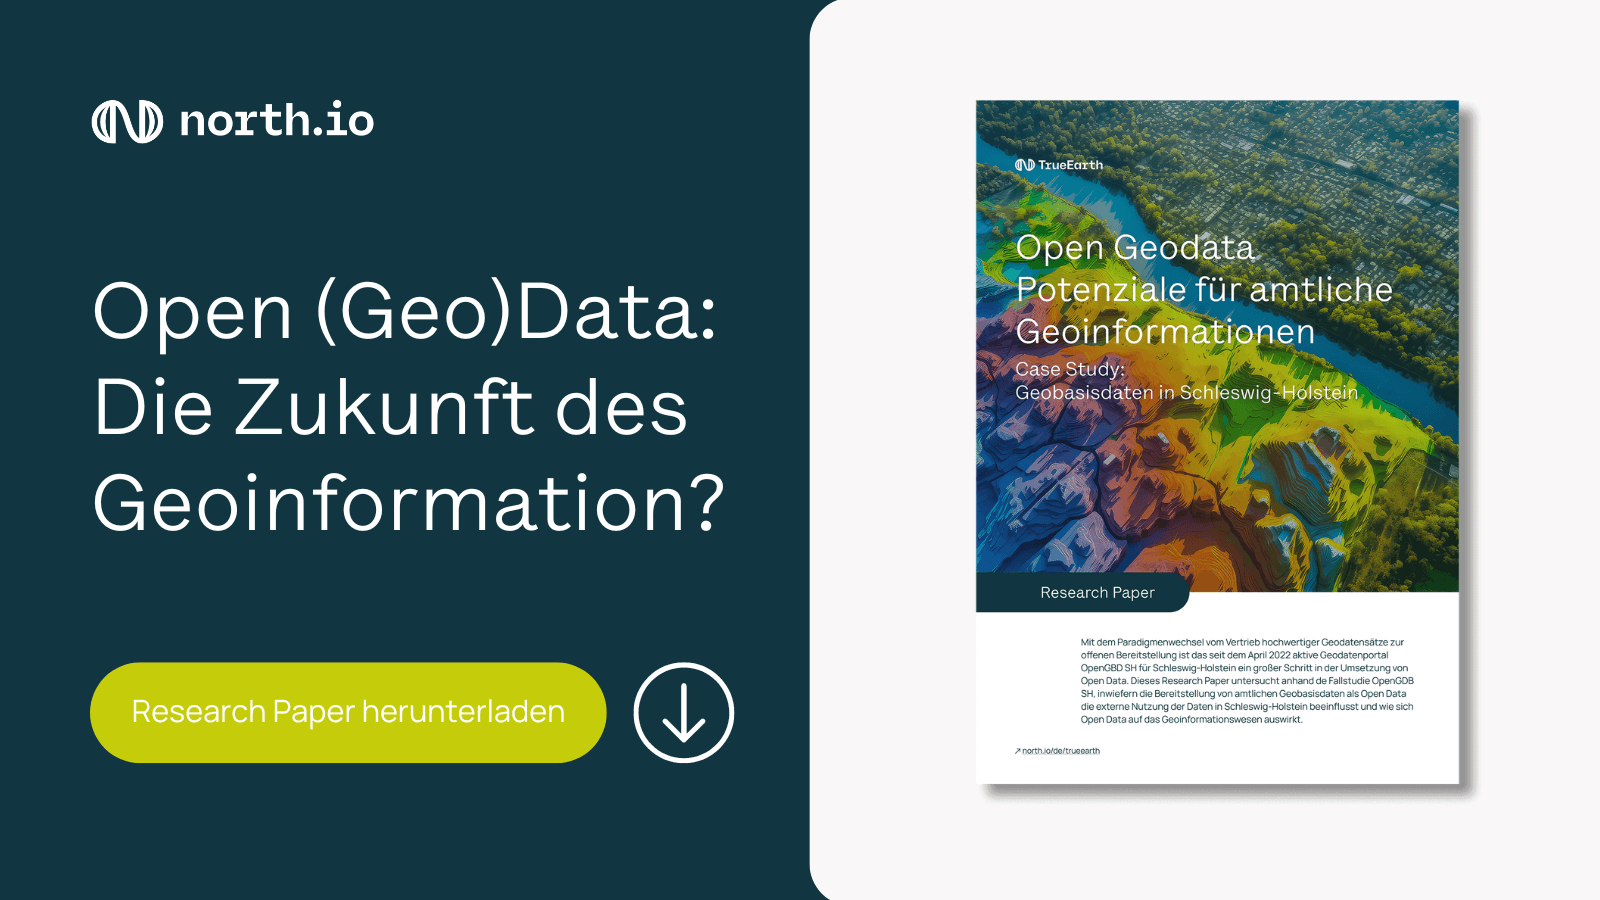 Research Paper: Open Geodata: Potenziale für amtliche Geoinformationen